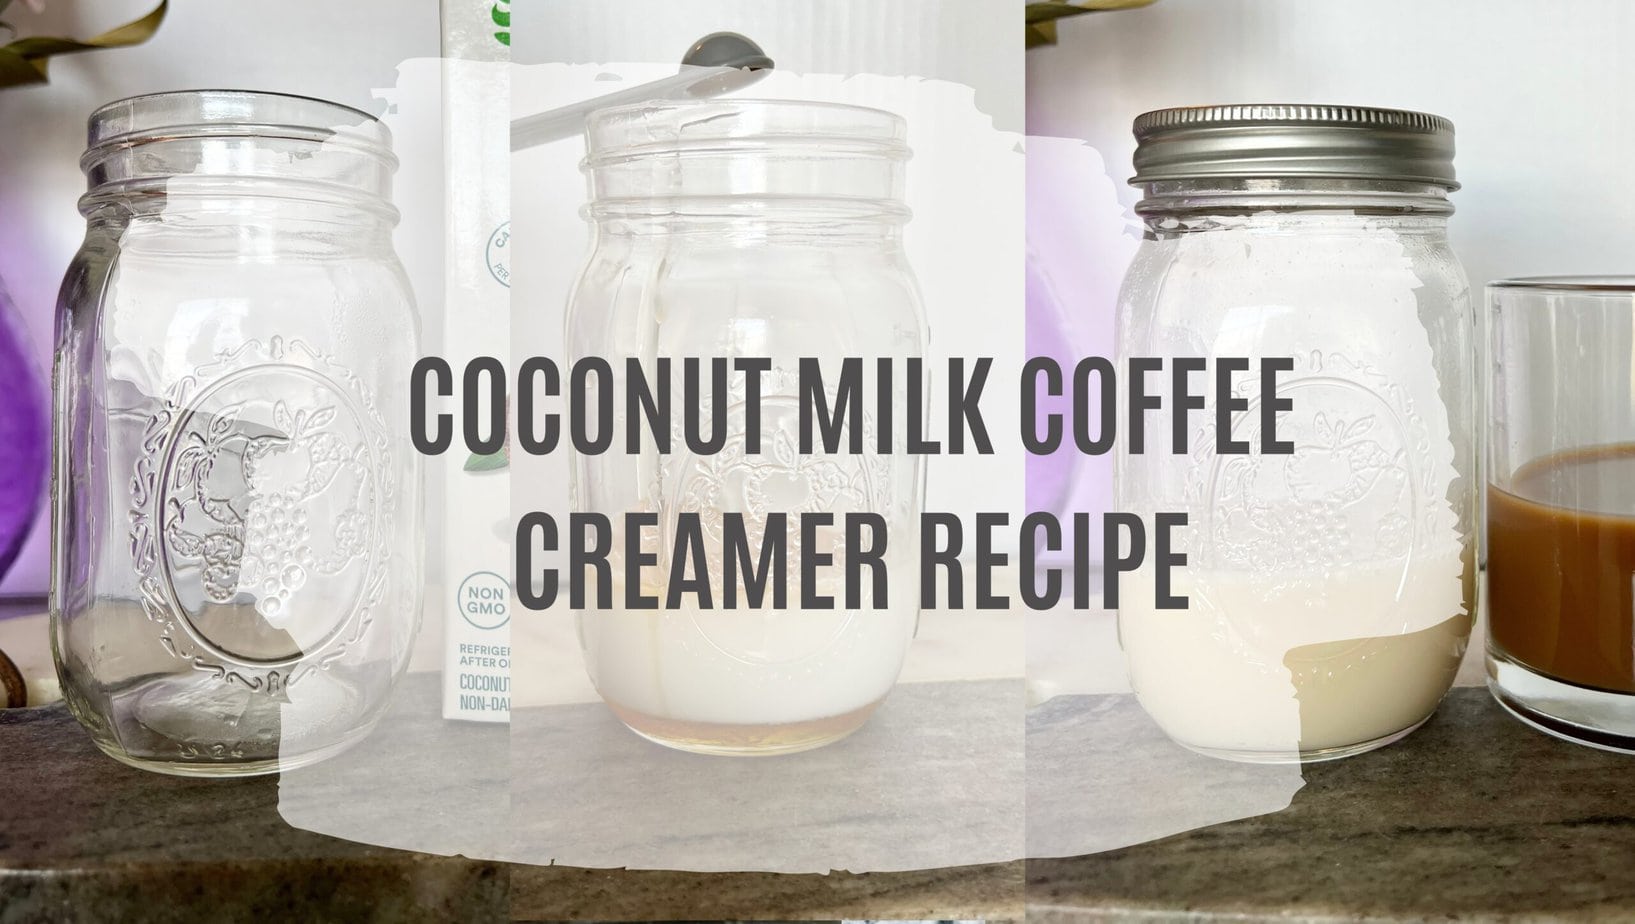 COCONUT MILK COFFEE CREAMER RECIPE